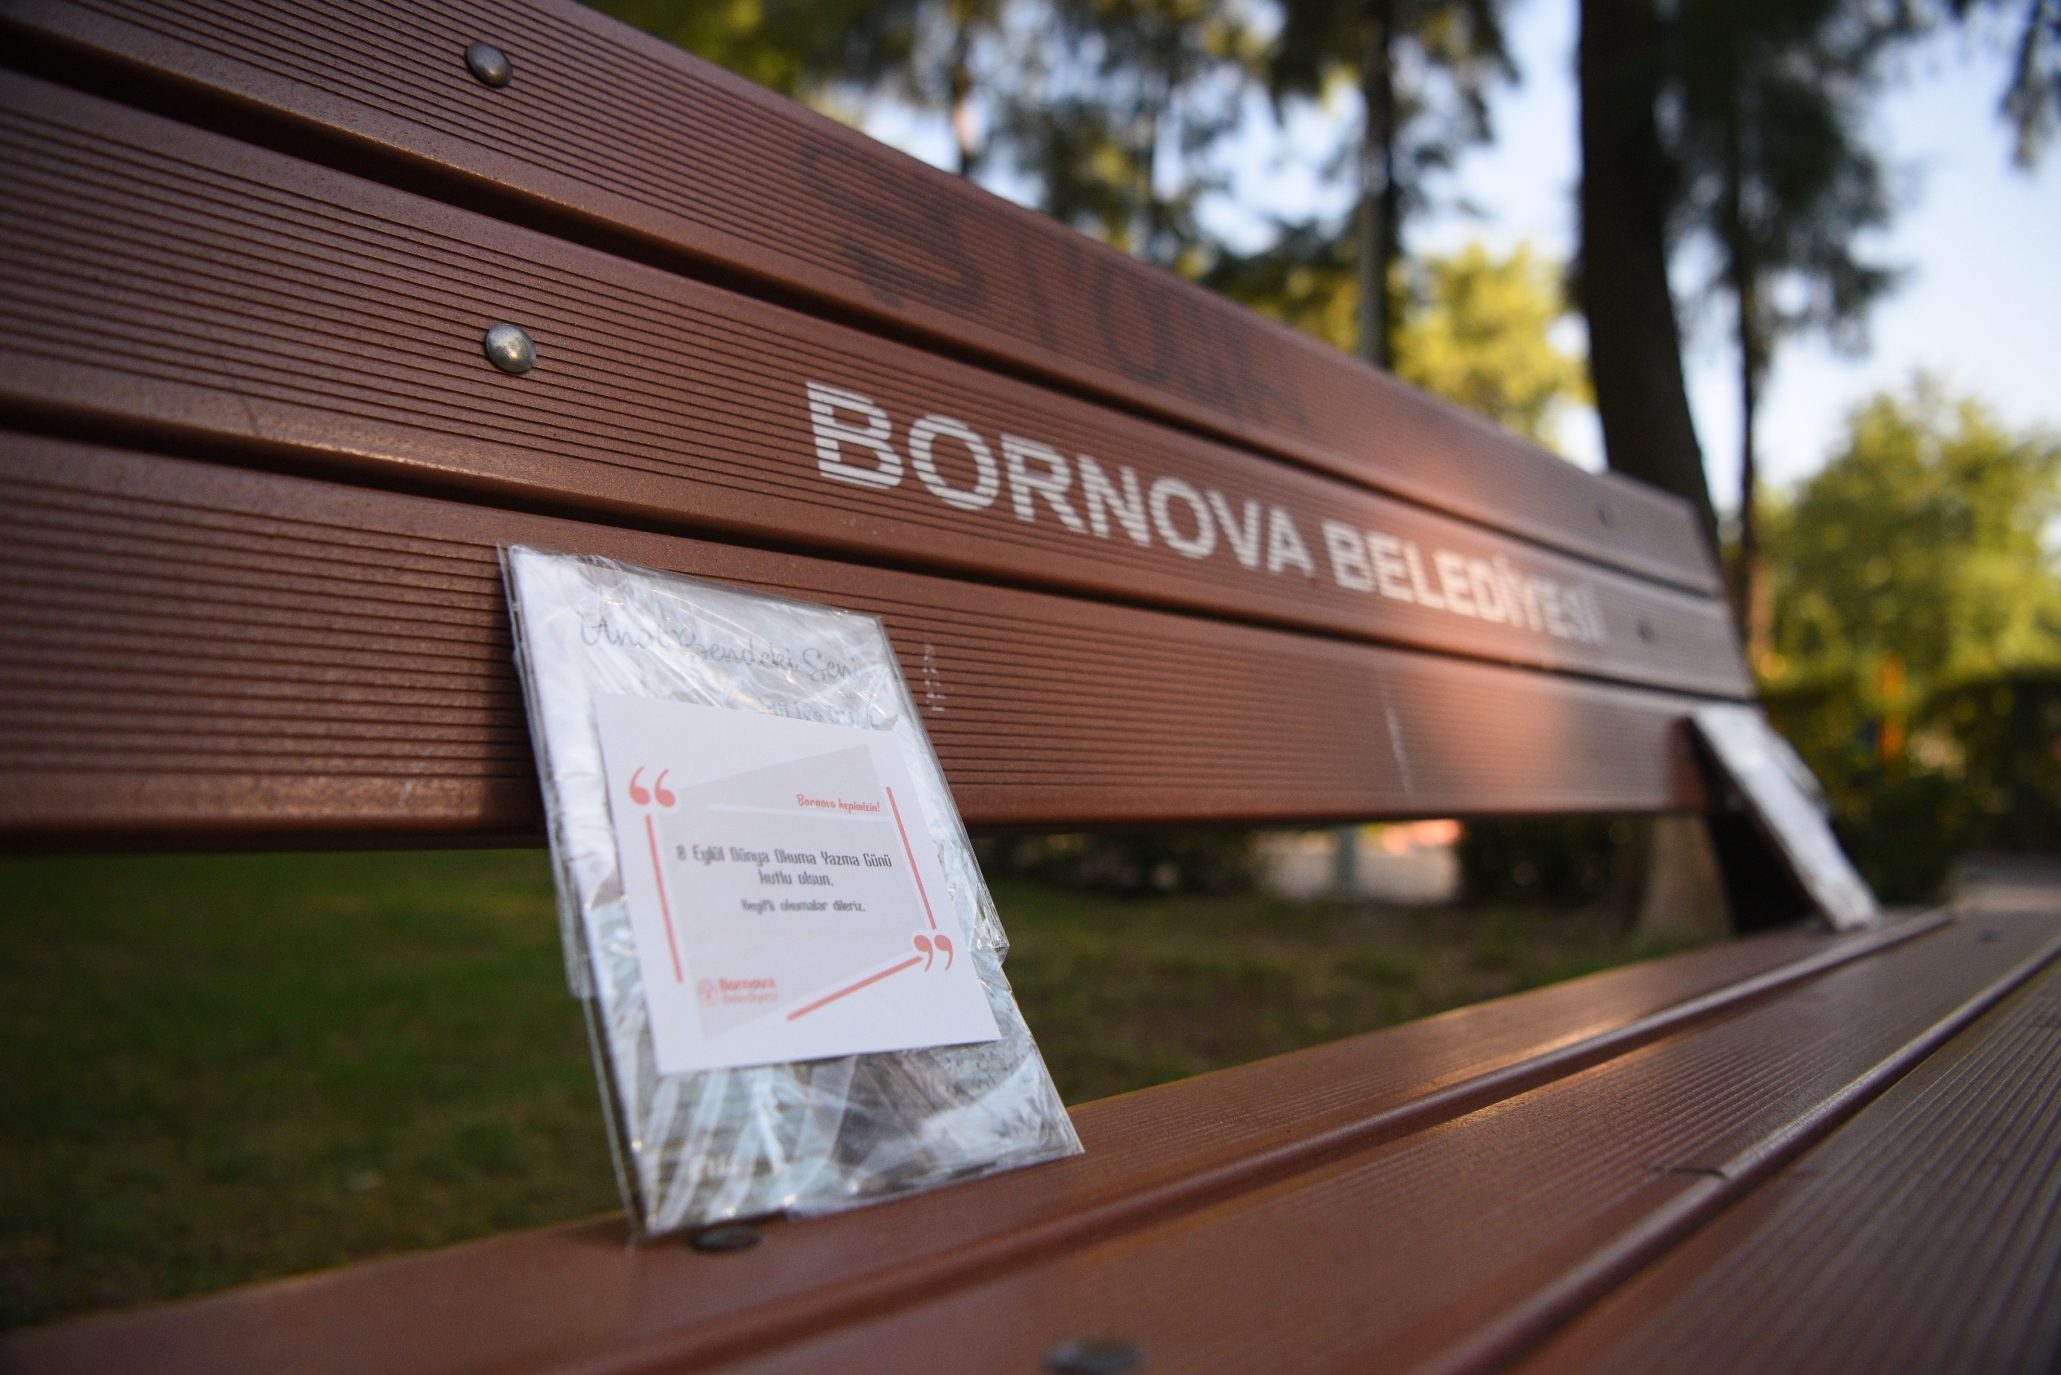 Bornova Belediyesi 8 Eylül Dünya Okuma Yazma Günü kapsamında vatandaşlara ücretsiz kitap dağıttı.